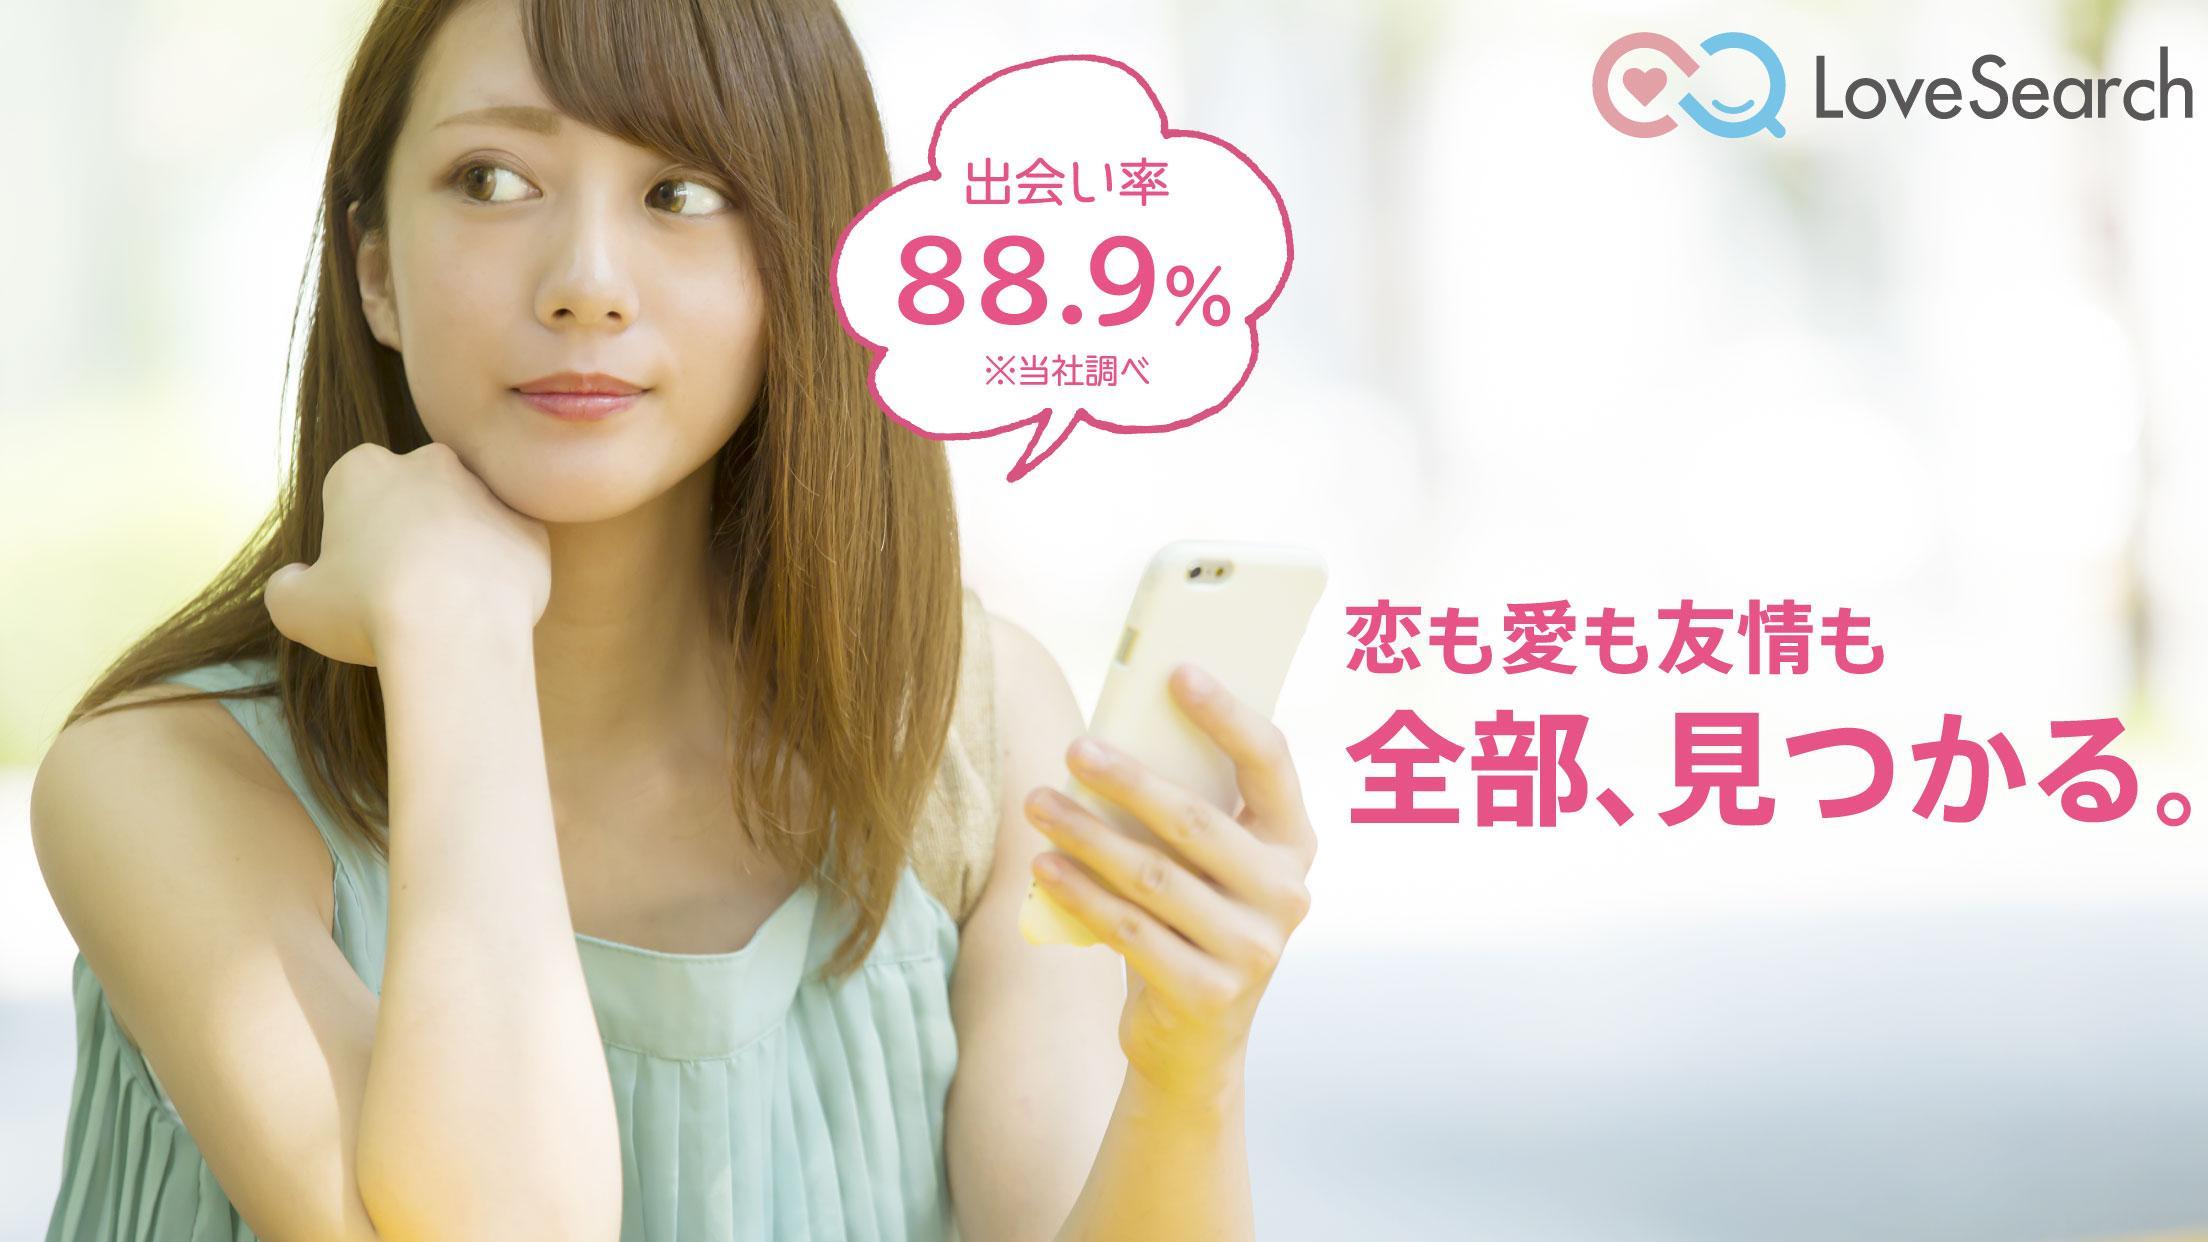 恋活 婚活マッチングアプリ ラブサーチ Lovesearch For Android Apk Download